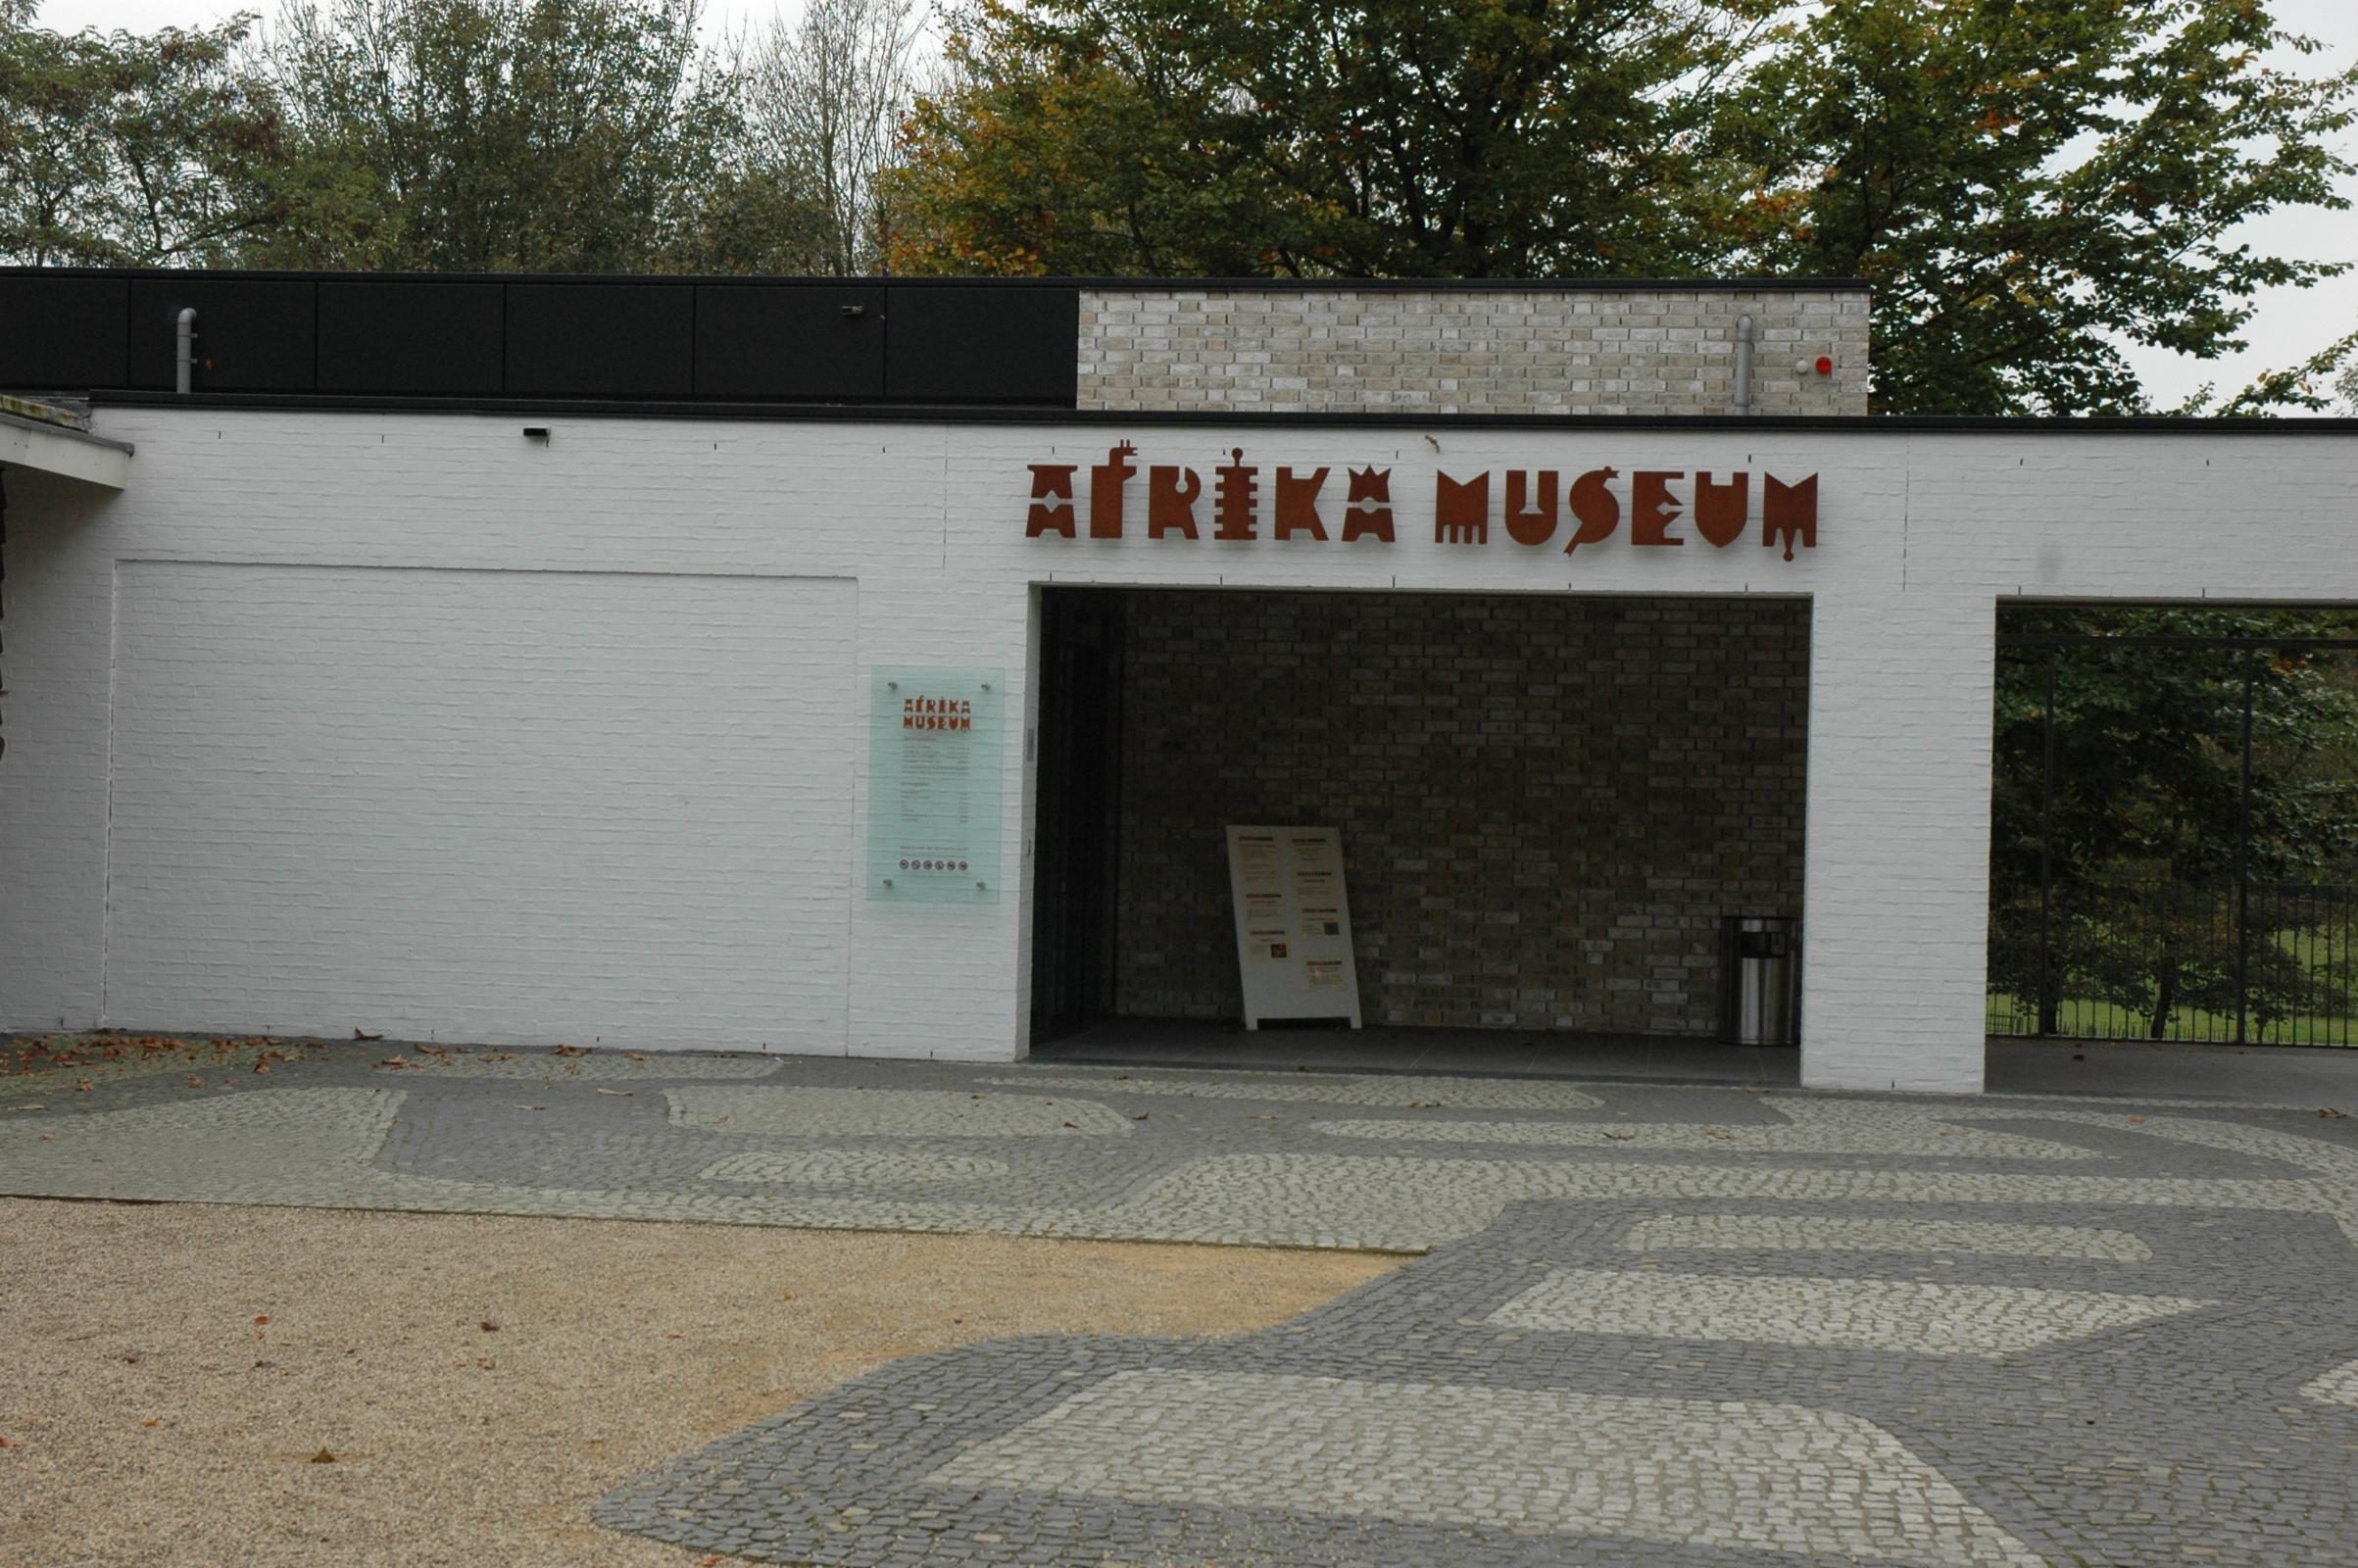 Het Afrika museum in Berg en Dal